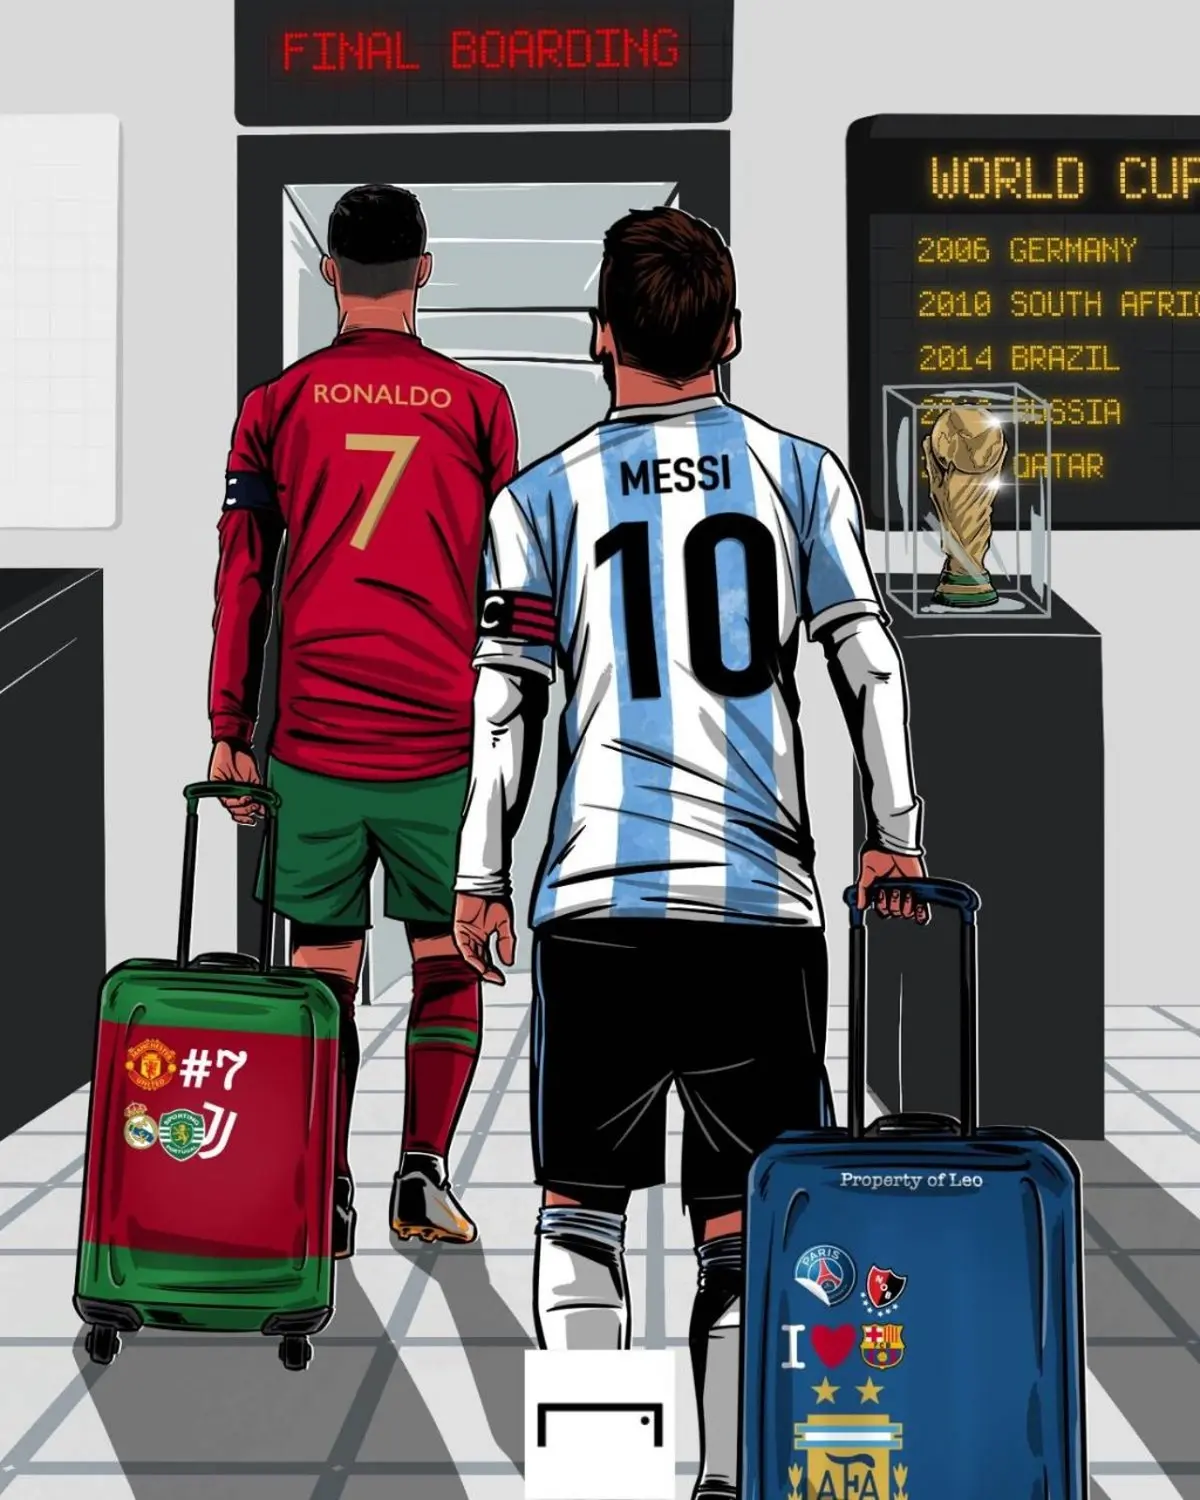 پیش بینی هوش مصنوعی  | فینال عجیب جام جهانی رویارویی مسی و رونالدو